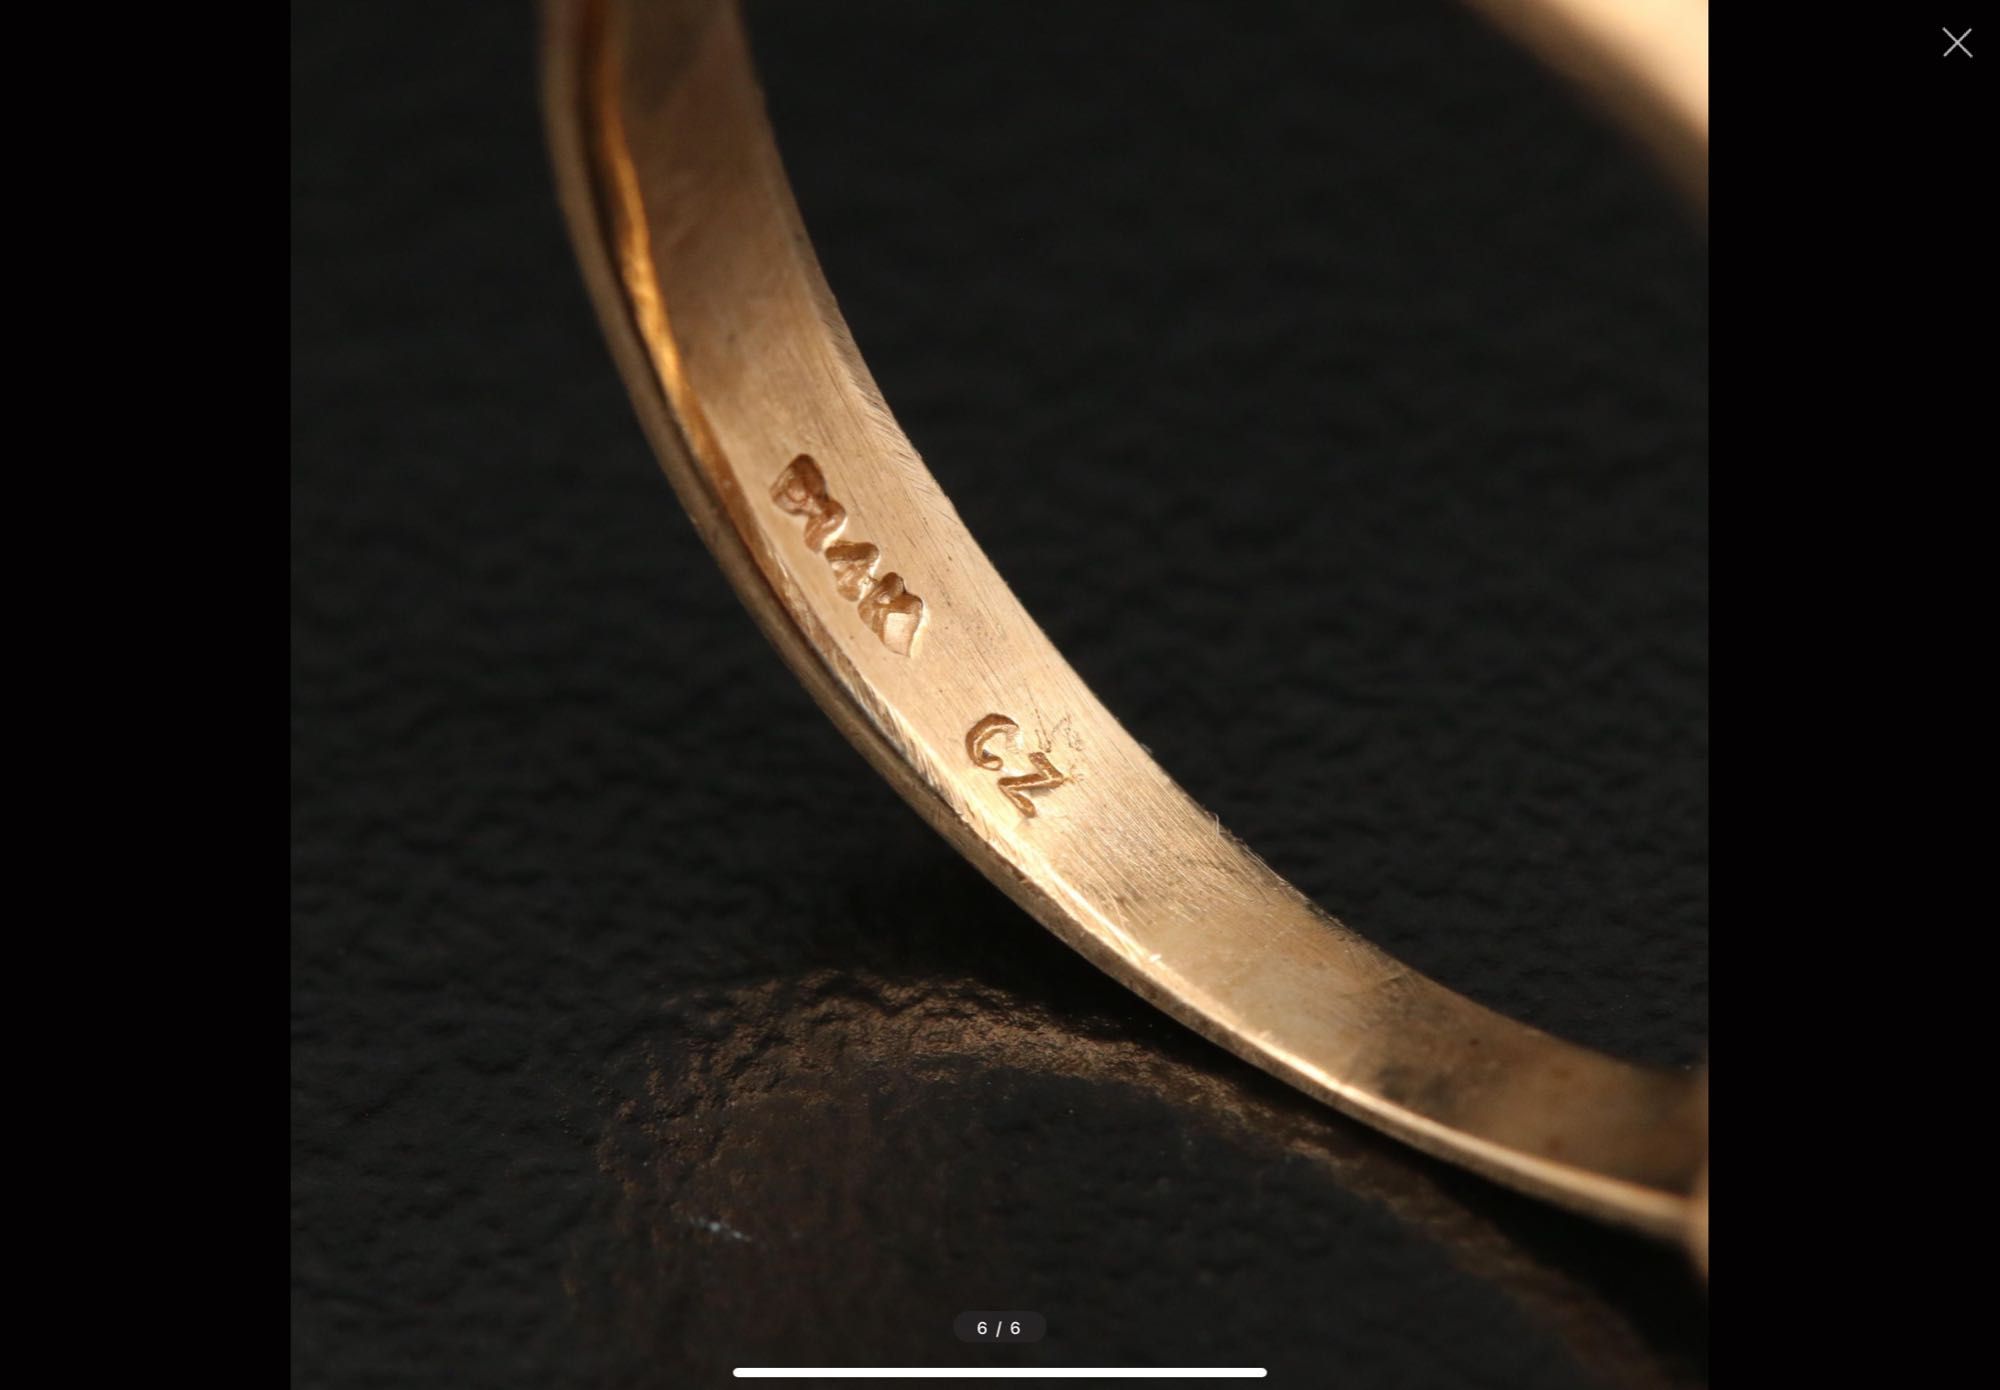 Золотые кольца с камнем Цирконий, из Америки.